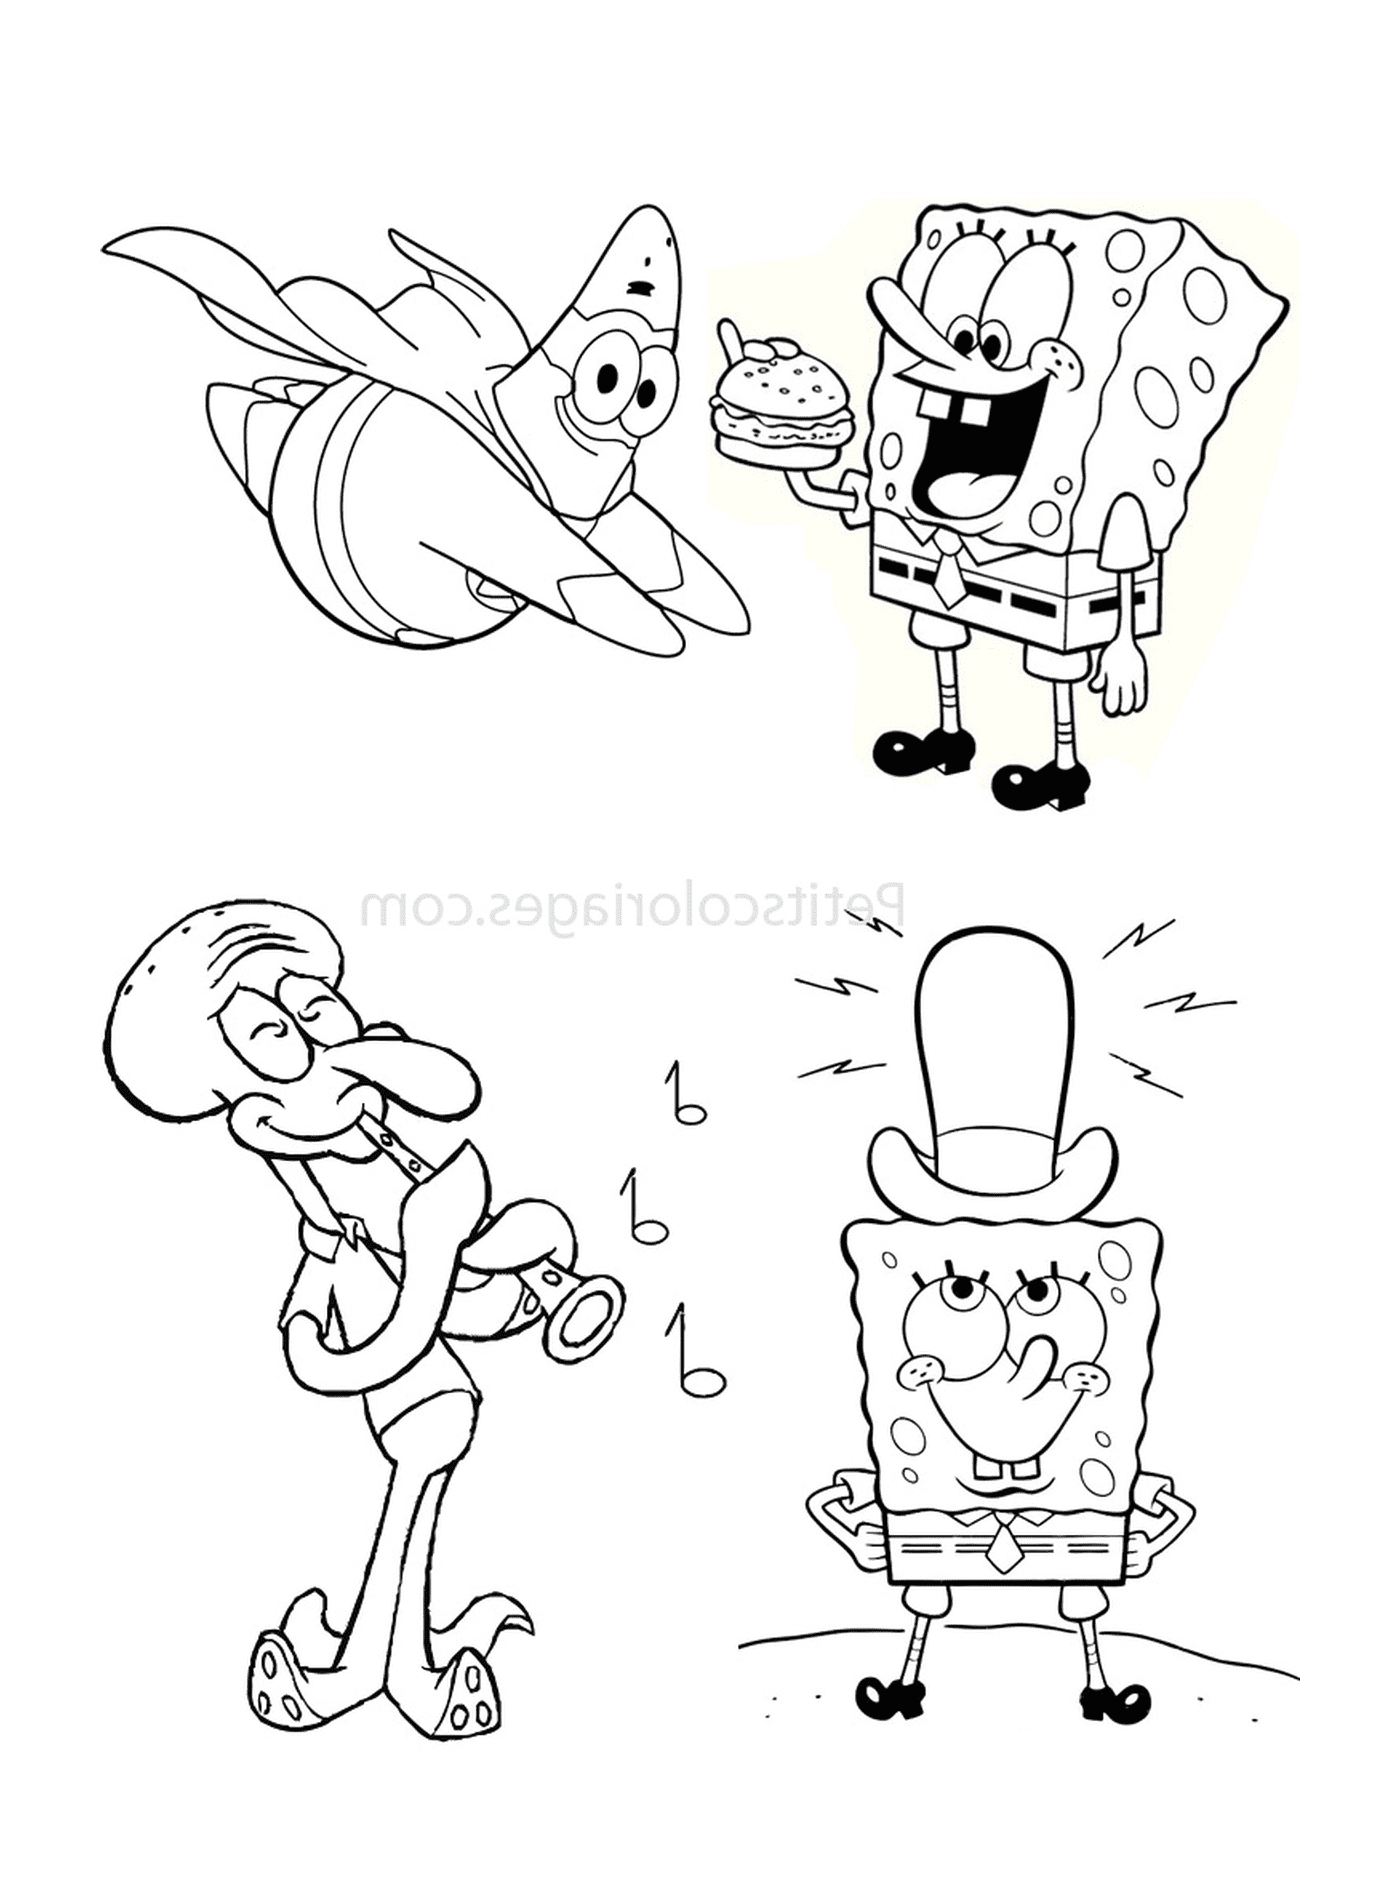  مجموعة من شخصيات الكاريكاتير معاً 